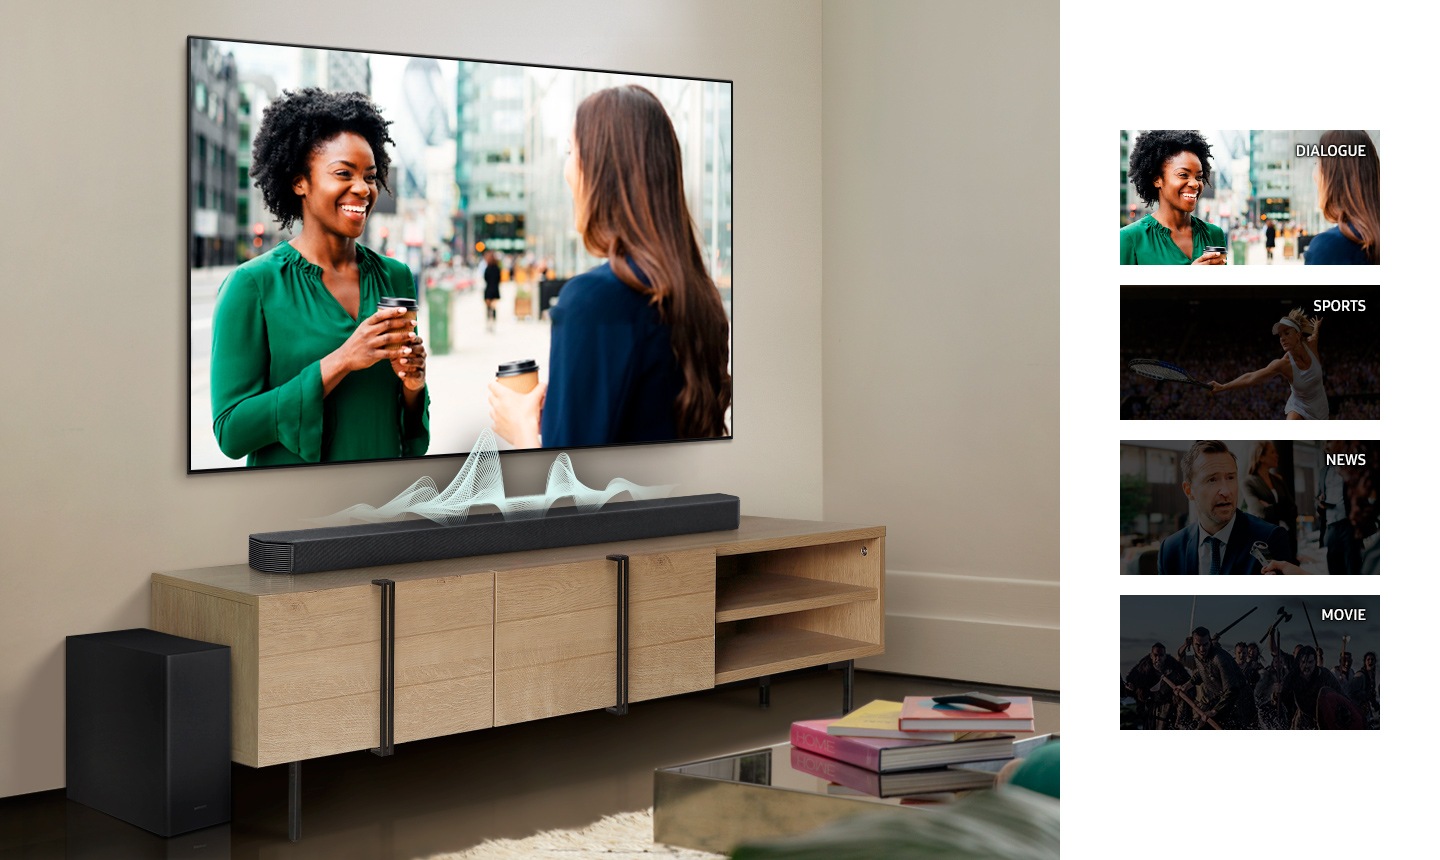 Màn hình TV thay đổi từ hội thoại, thể thao, tin tức sang phim và soundbar hiển thị các sóng âm thanh khác nhau cho từng sóng để cho biết cách soundbar thích ứng với giọng nói trong từng nội dung.